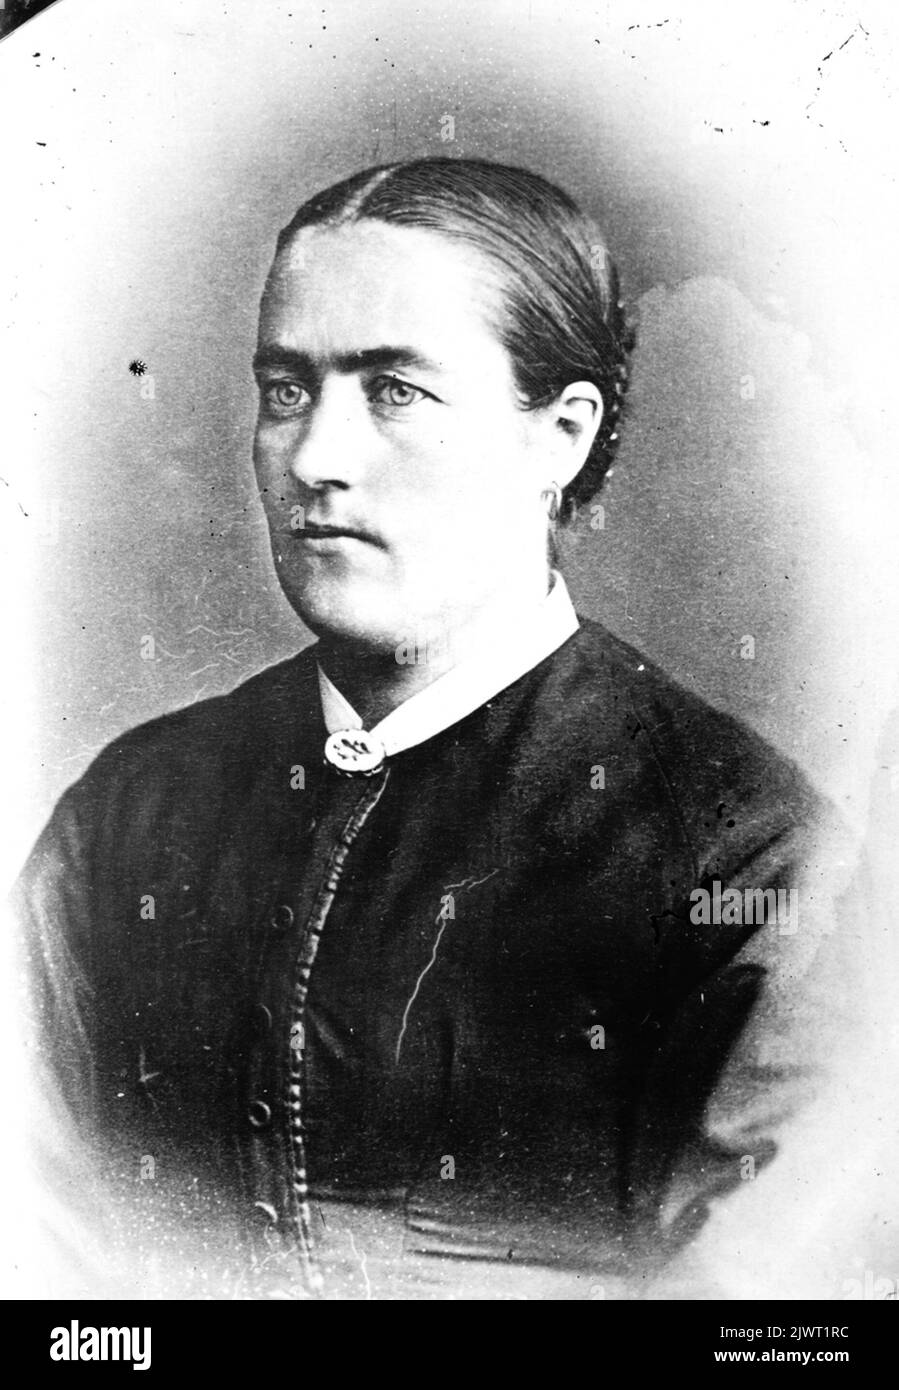 Die erste Frau des Fotografen Forsbäck. Sie starb jung. Ihre Tochter, geboren 1868, war mit Lars Sundin verheiratet. Sie hatten Sohn John Sundin, der ein weithin bekannter kommunaler Mann im Wald wurde. Fotograf Forsbäcks första fru. Hon Dog ung. Deras dotter, född 1868, blev Geschenk med Lars Sundin. De hade sonen John Sundin som blev känd kommunalman i Skog. Stockfoto